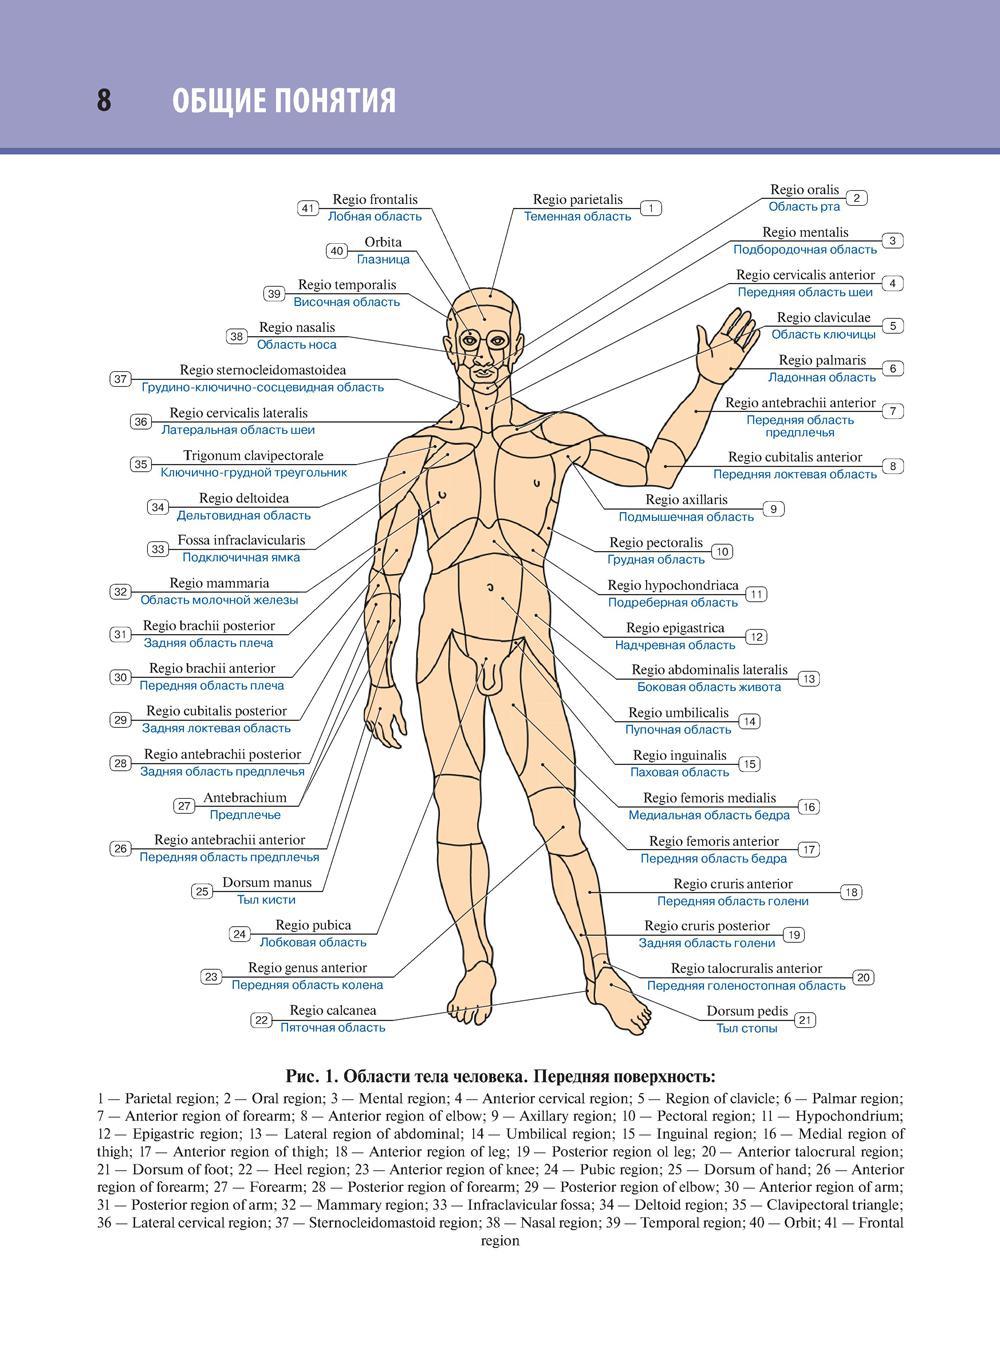 Название частей человека. Части человеческого тела анатомия. Внешнее Анатомическое строение человека. Анатомическое название частей тела человека. Структура тела человека с описанием.